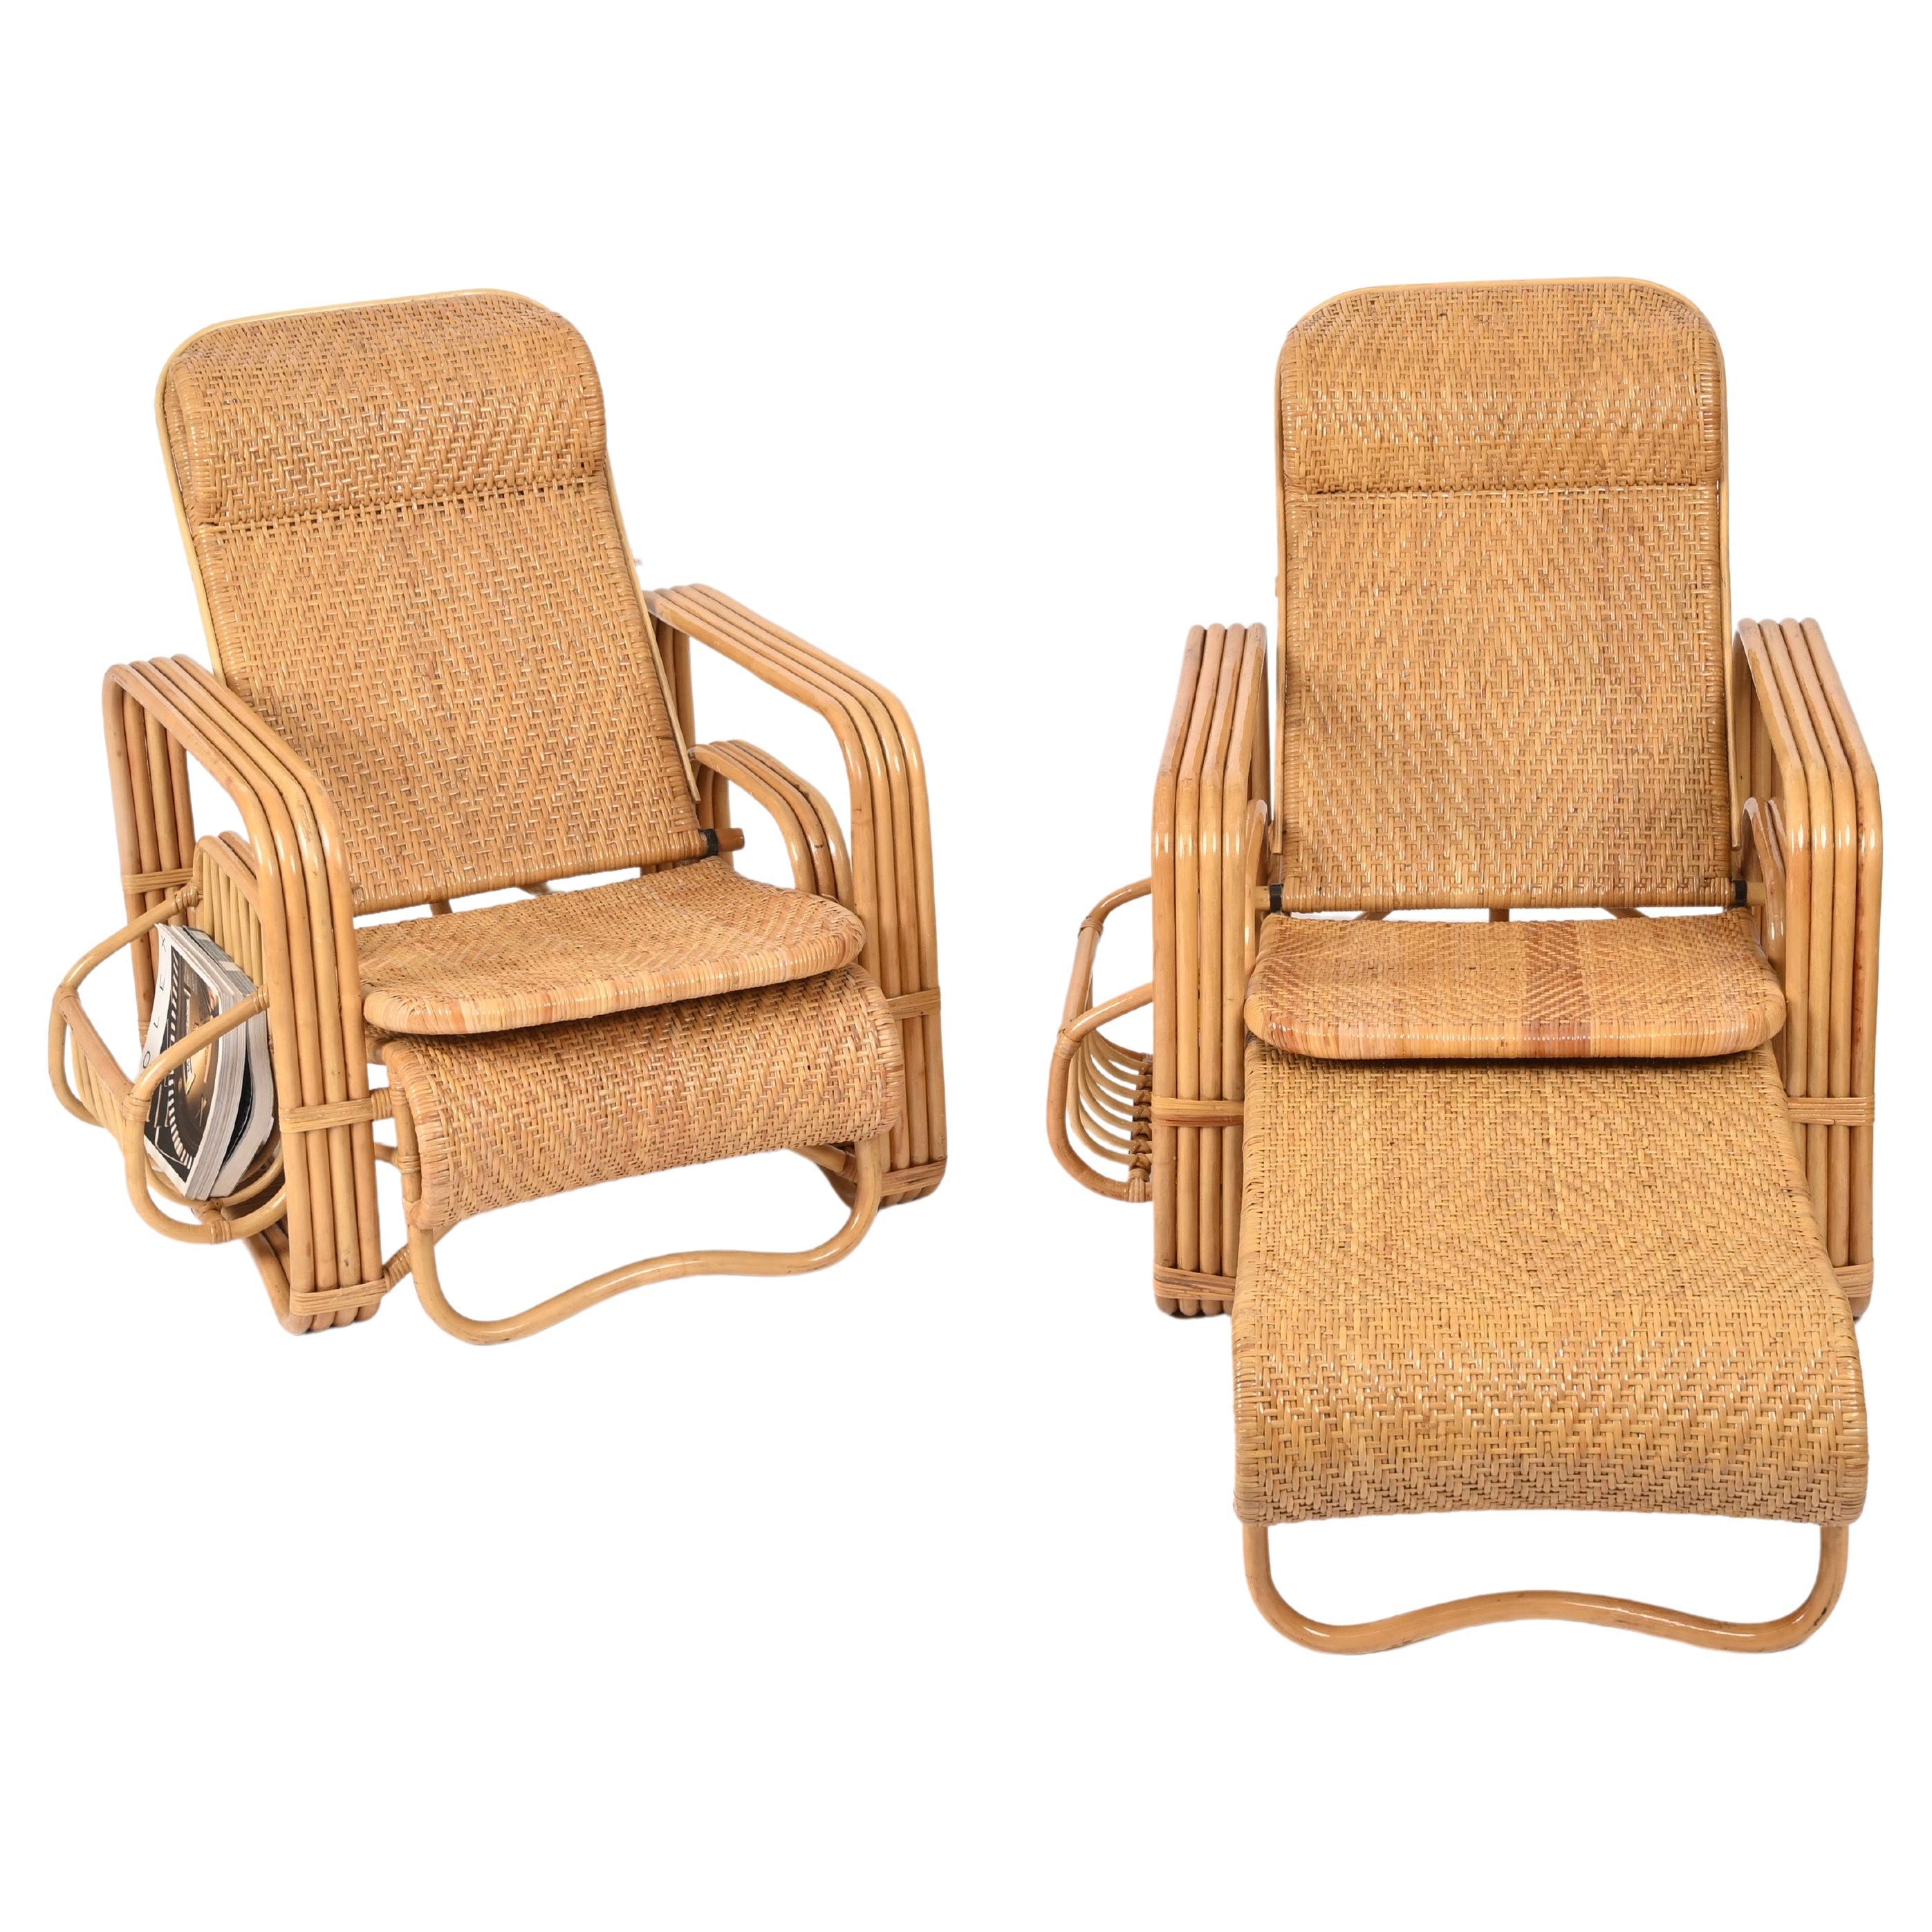 Spektakuläres Paar verstellbare Sessel / Loungesessel komplett aus gebogenem Bambus, Rattan und handgeflochtener Weide.  Diese wunderschönen Sessel wurden in den 1970er Jahren in Italien hergestellt und sind ein Werk der Firma Vivai del Sud.

Diese